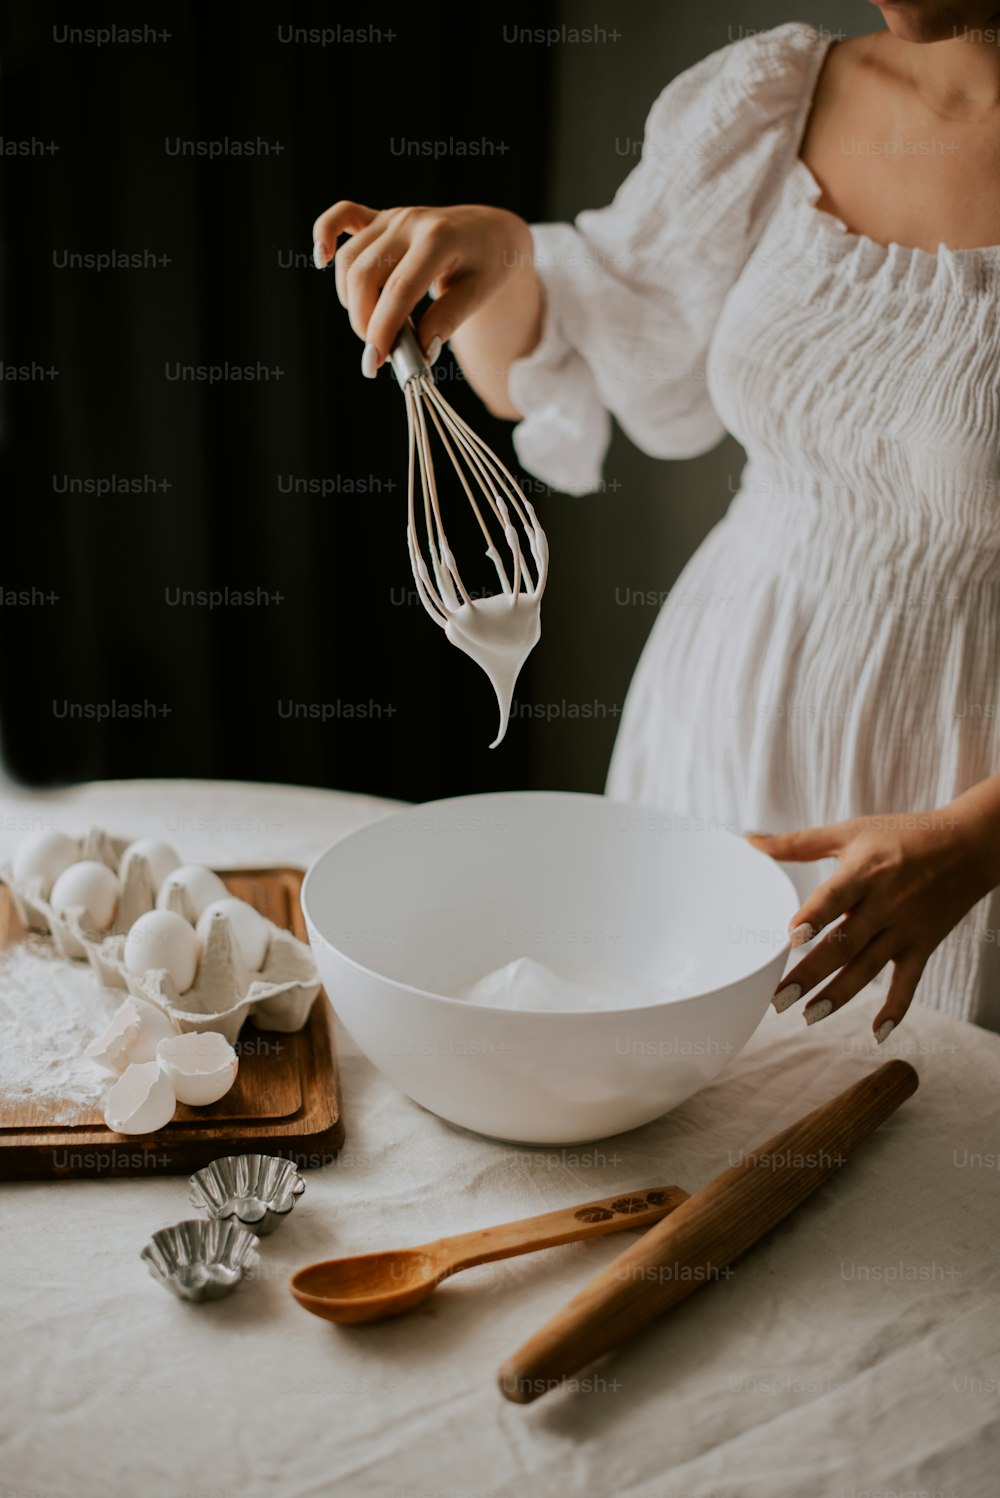 Una mujer con un vestido blanco bate huevos en un tazón